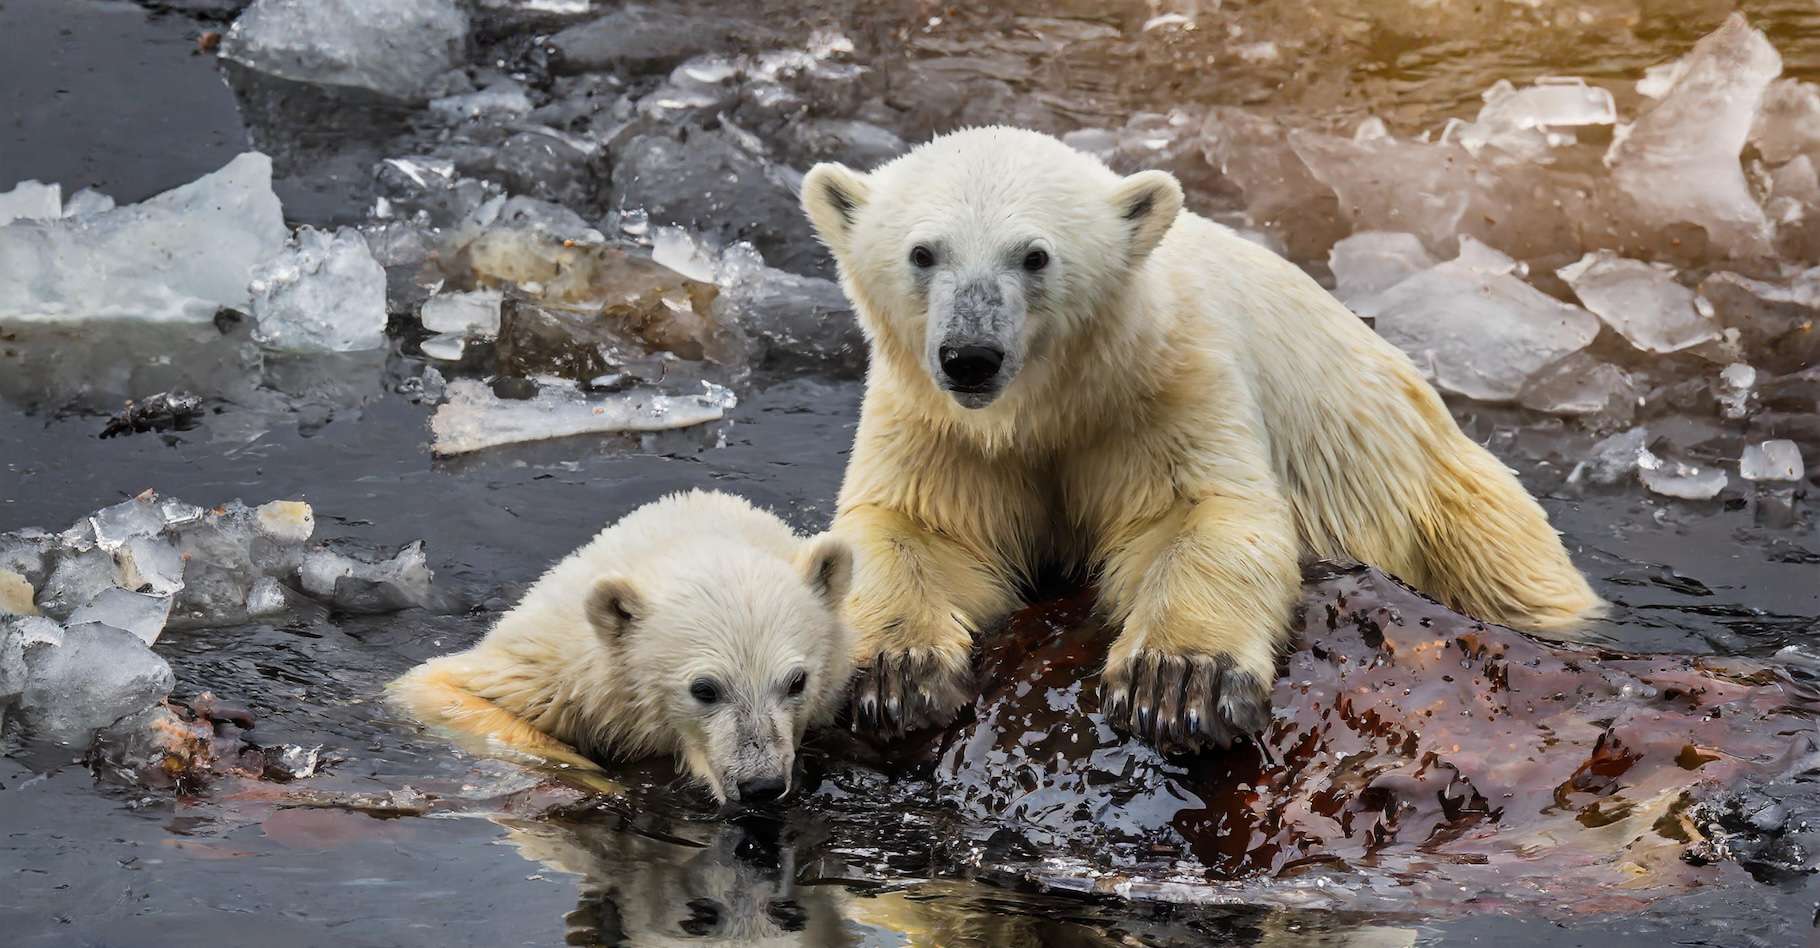 Voici la plus grande menace pour les ours polaires à court terme